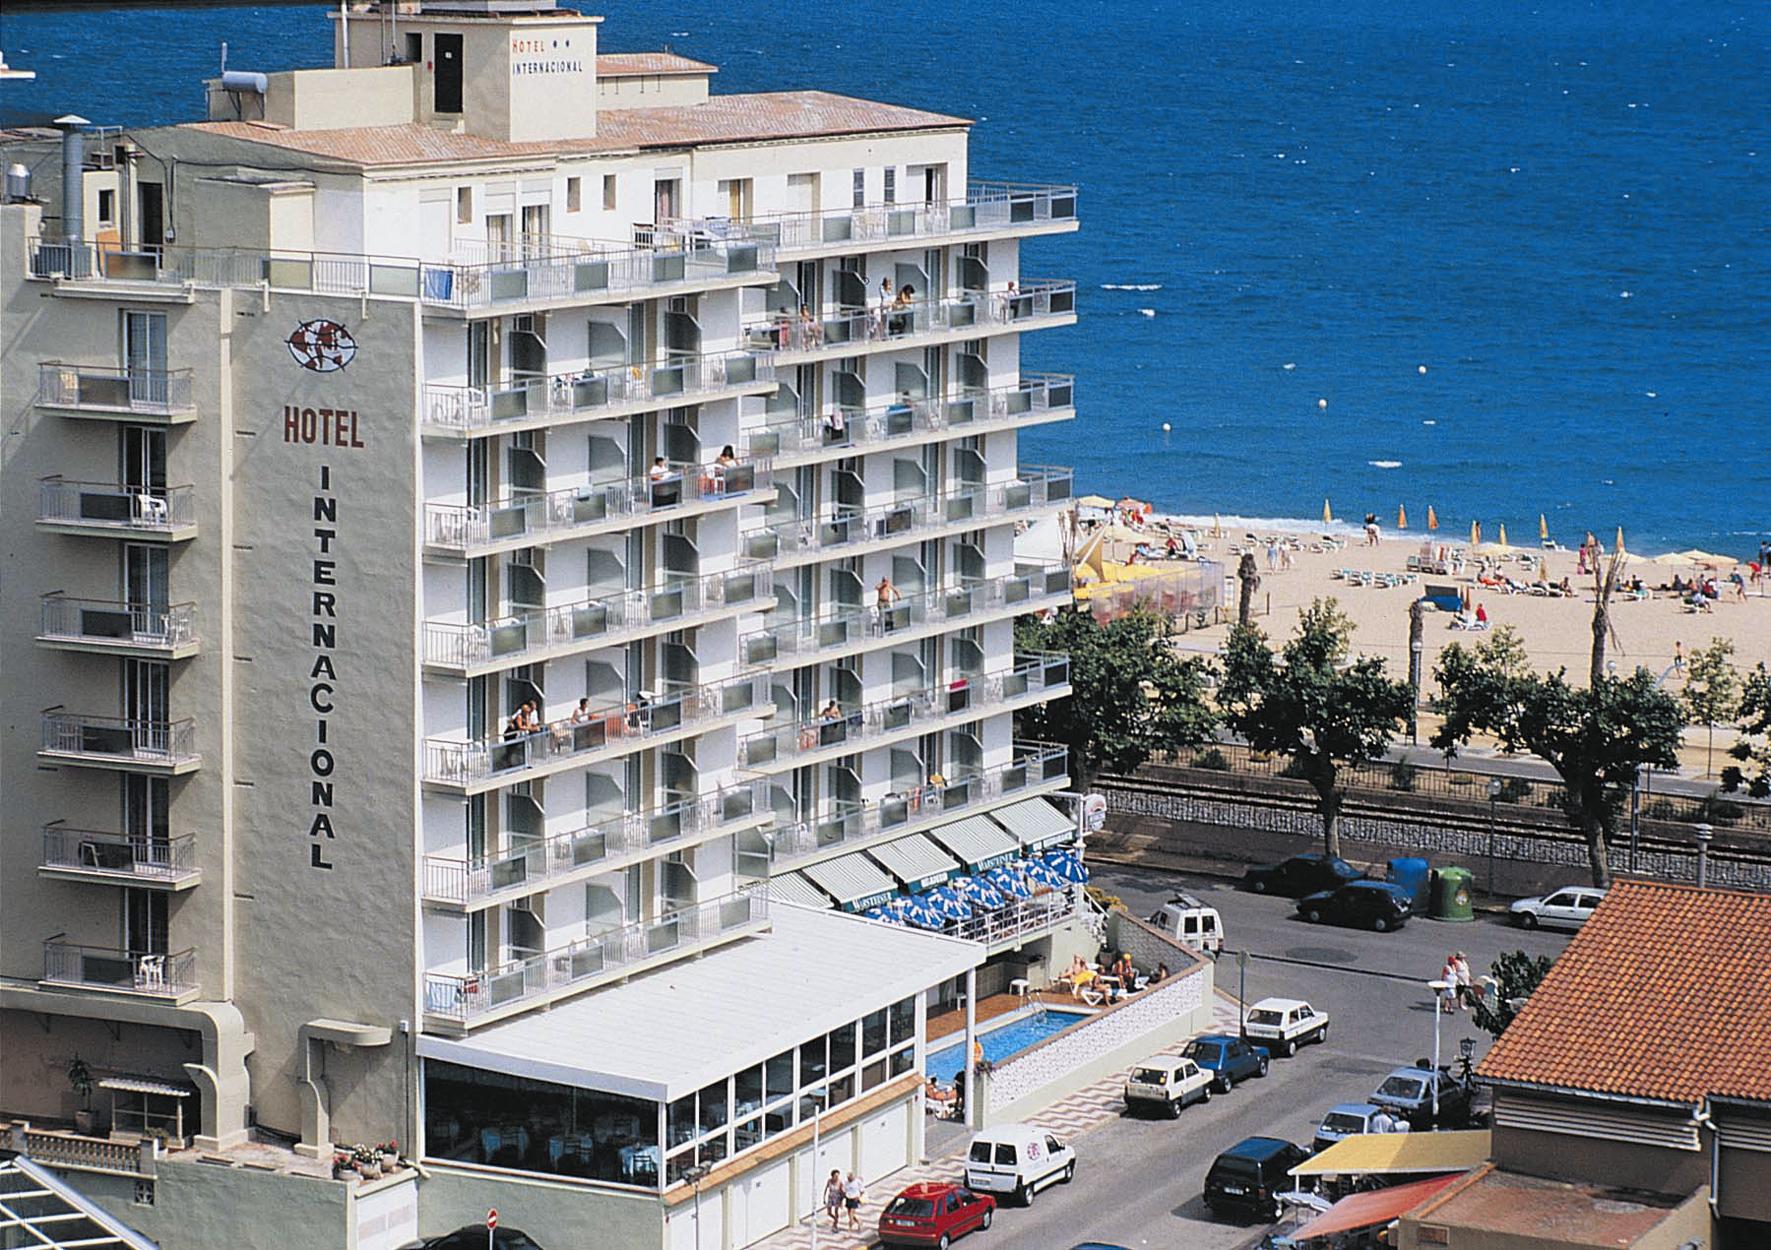 Hotel Internacional Calella